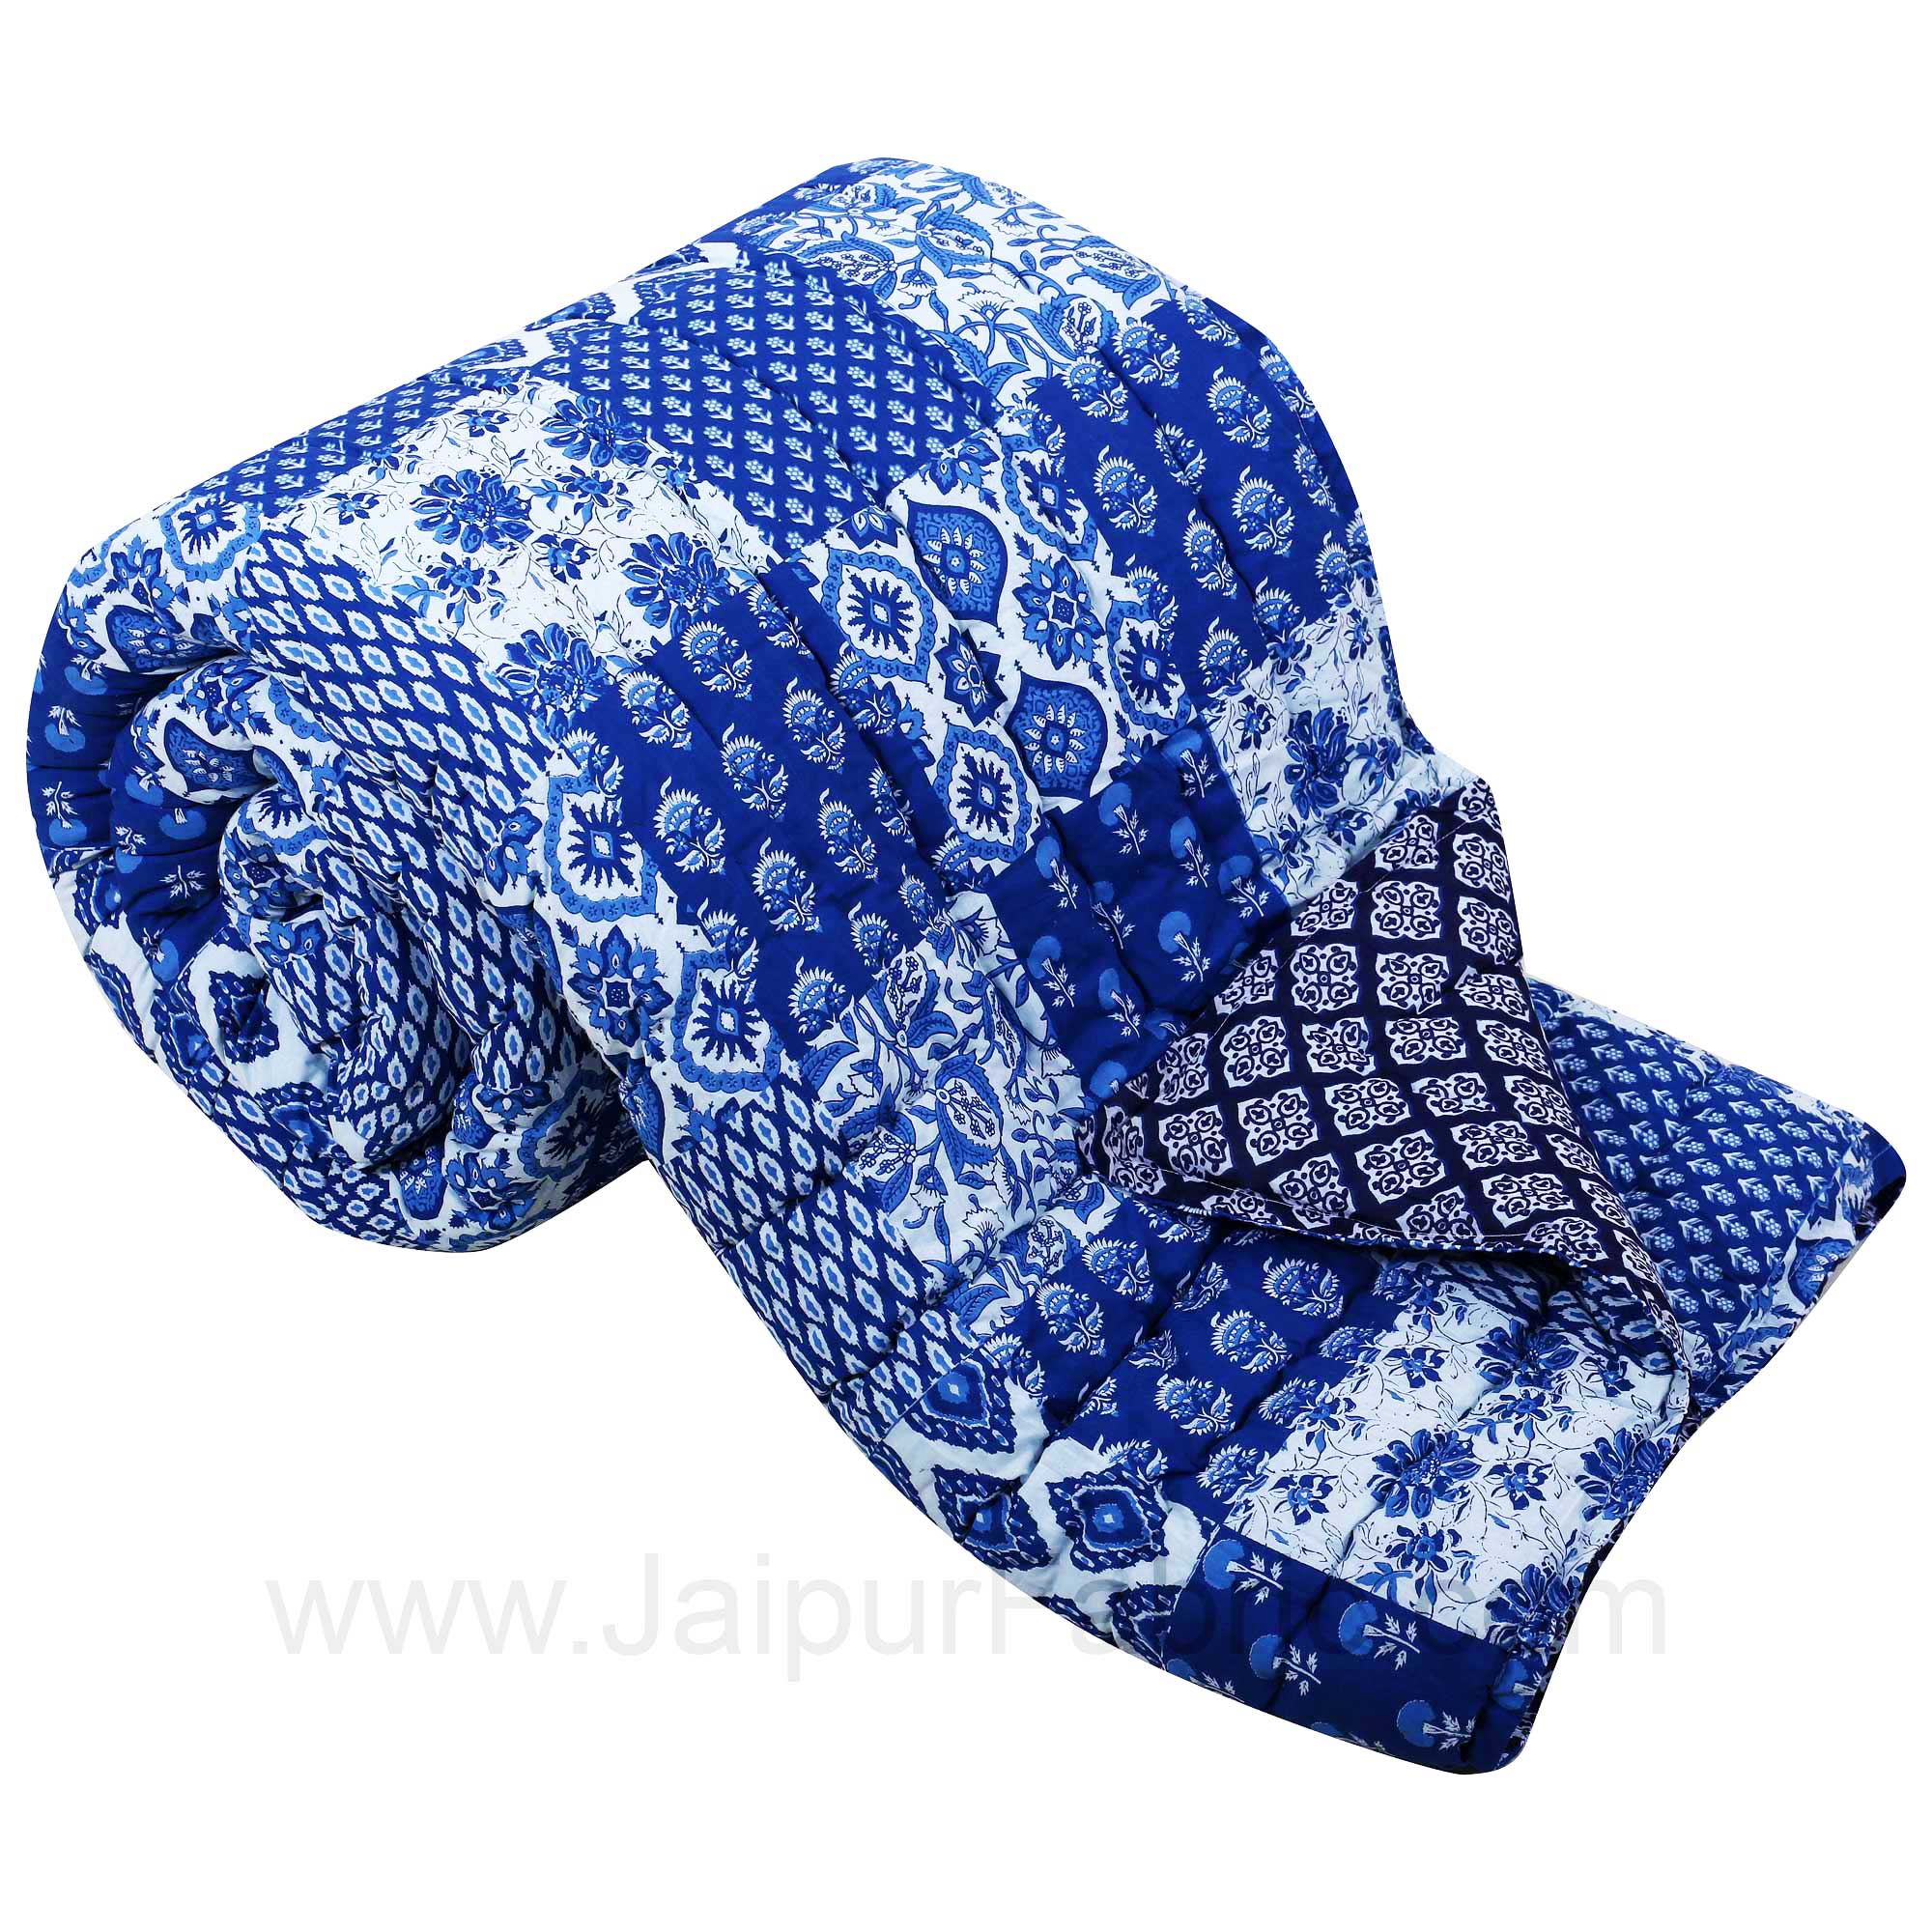 Jaipuri Quilt Blue Bagru Print Double Bed Quilt